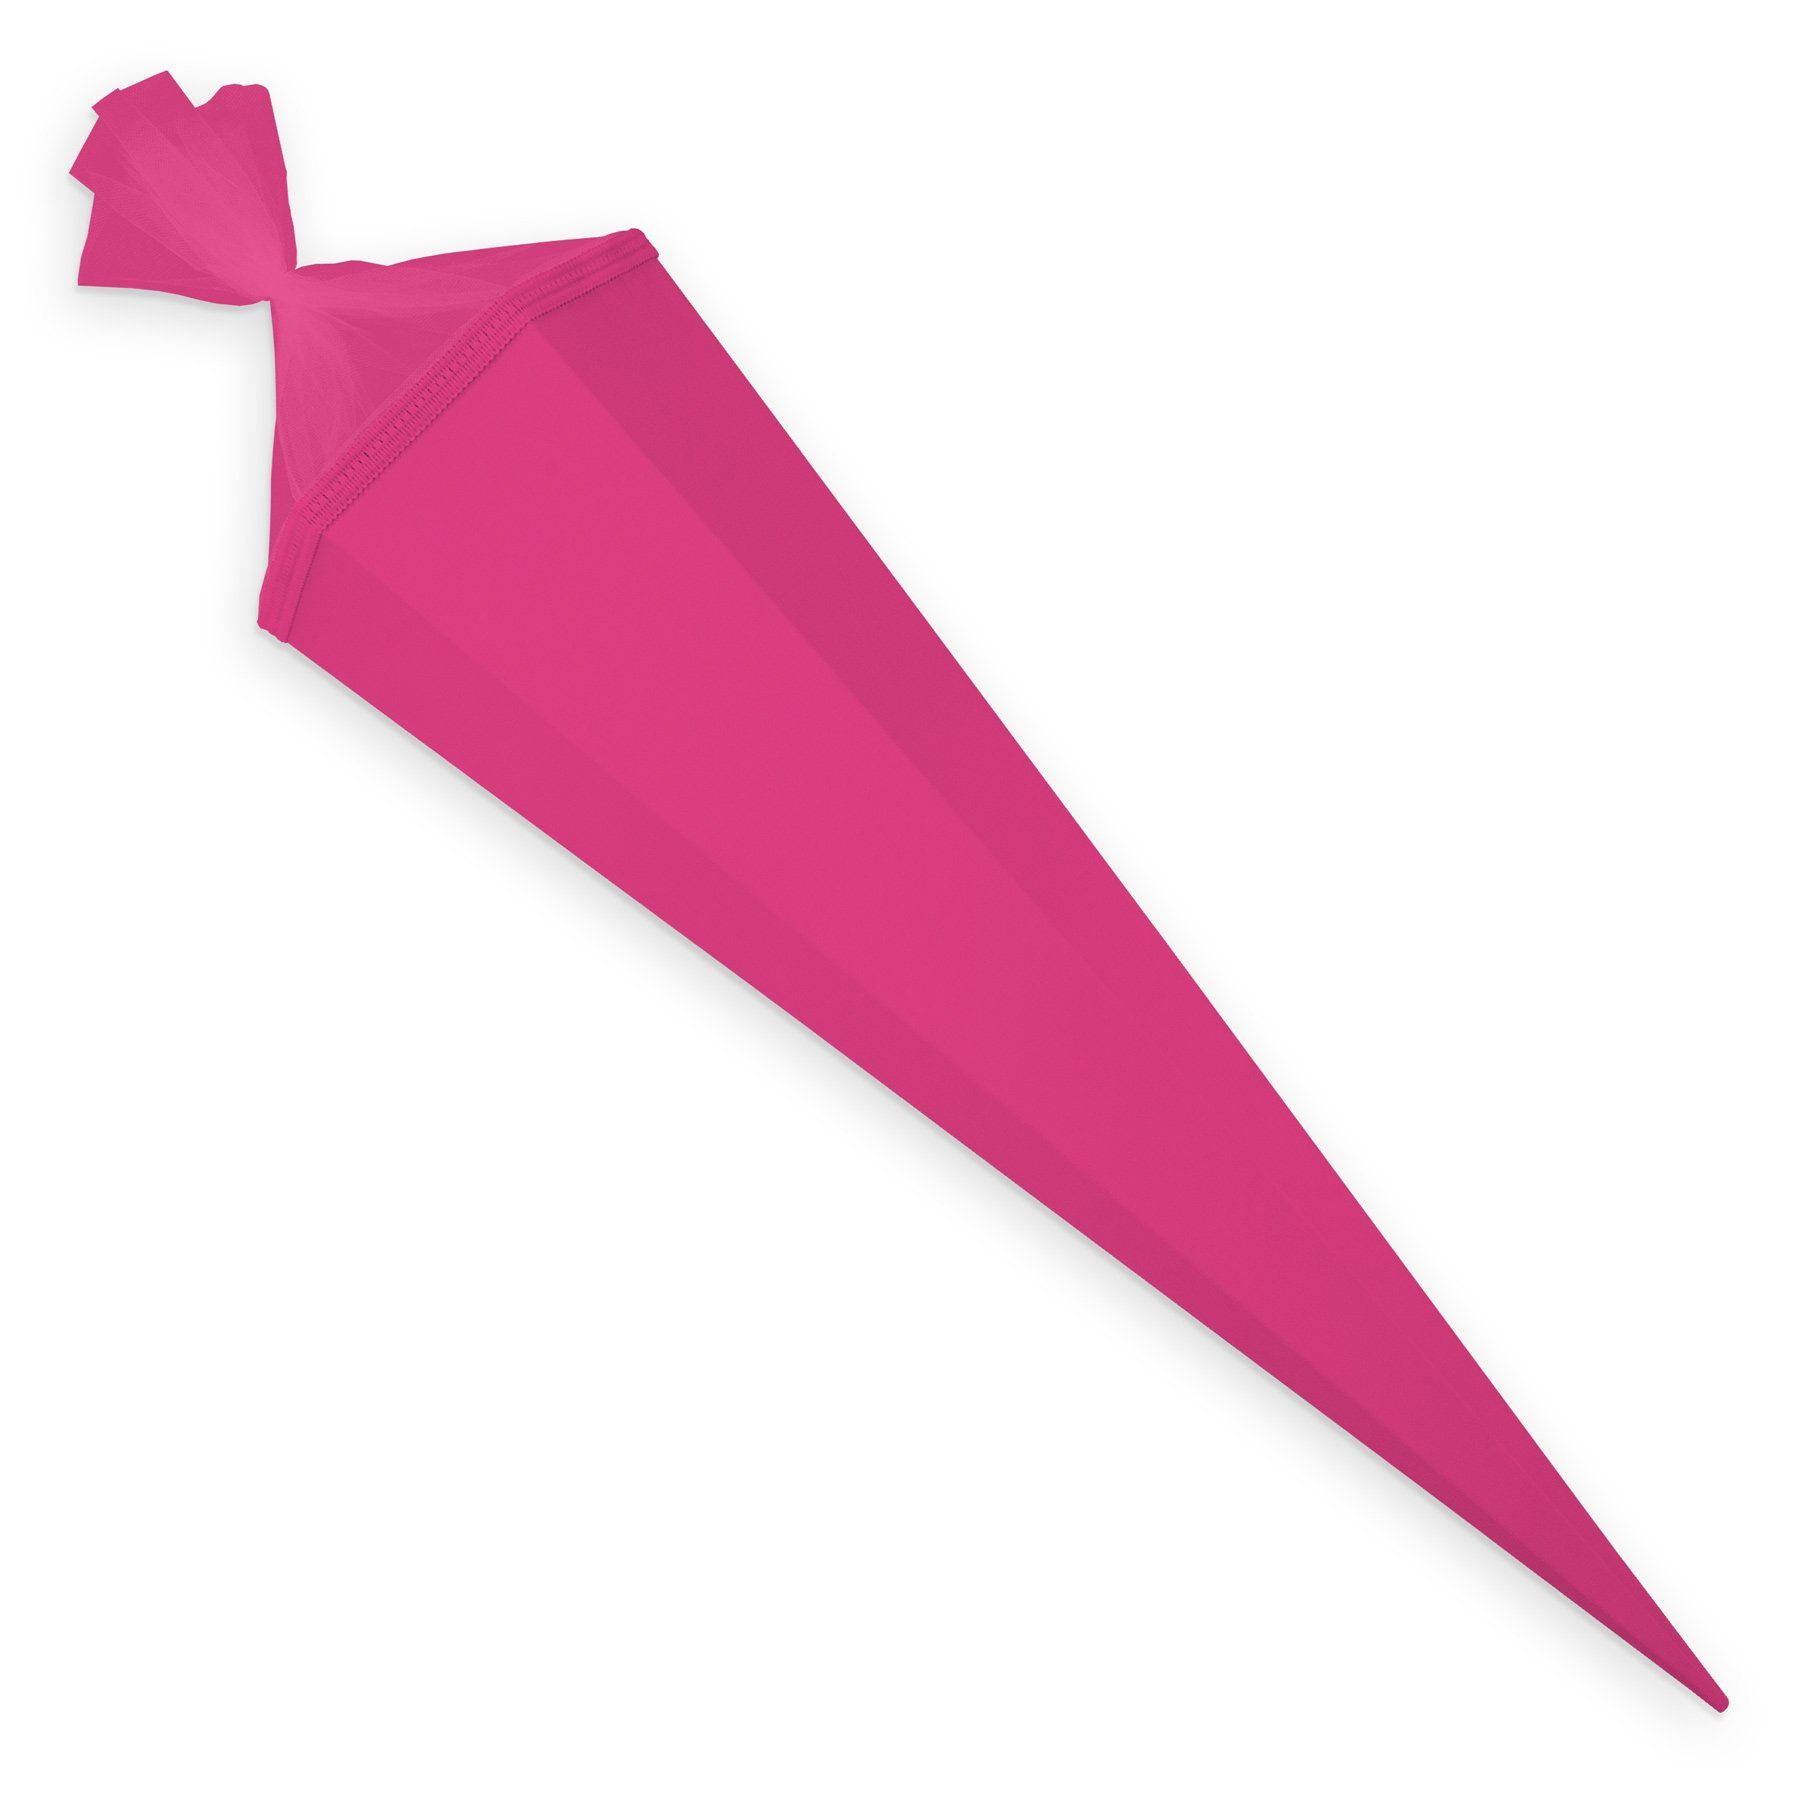 Bastelschultüte itenga 6eckig Schultüte Verschluss pink mit itenga